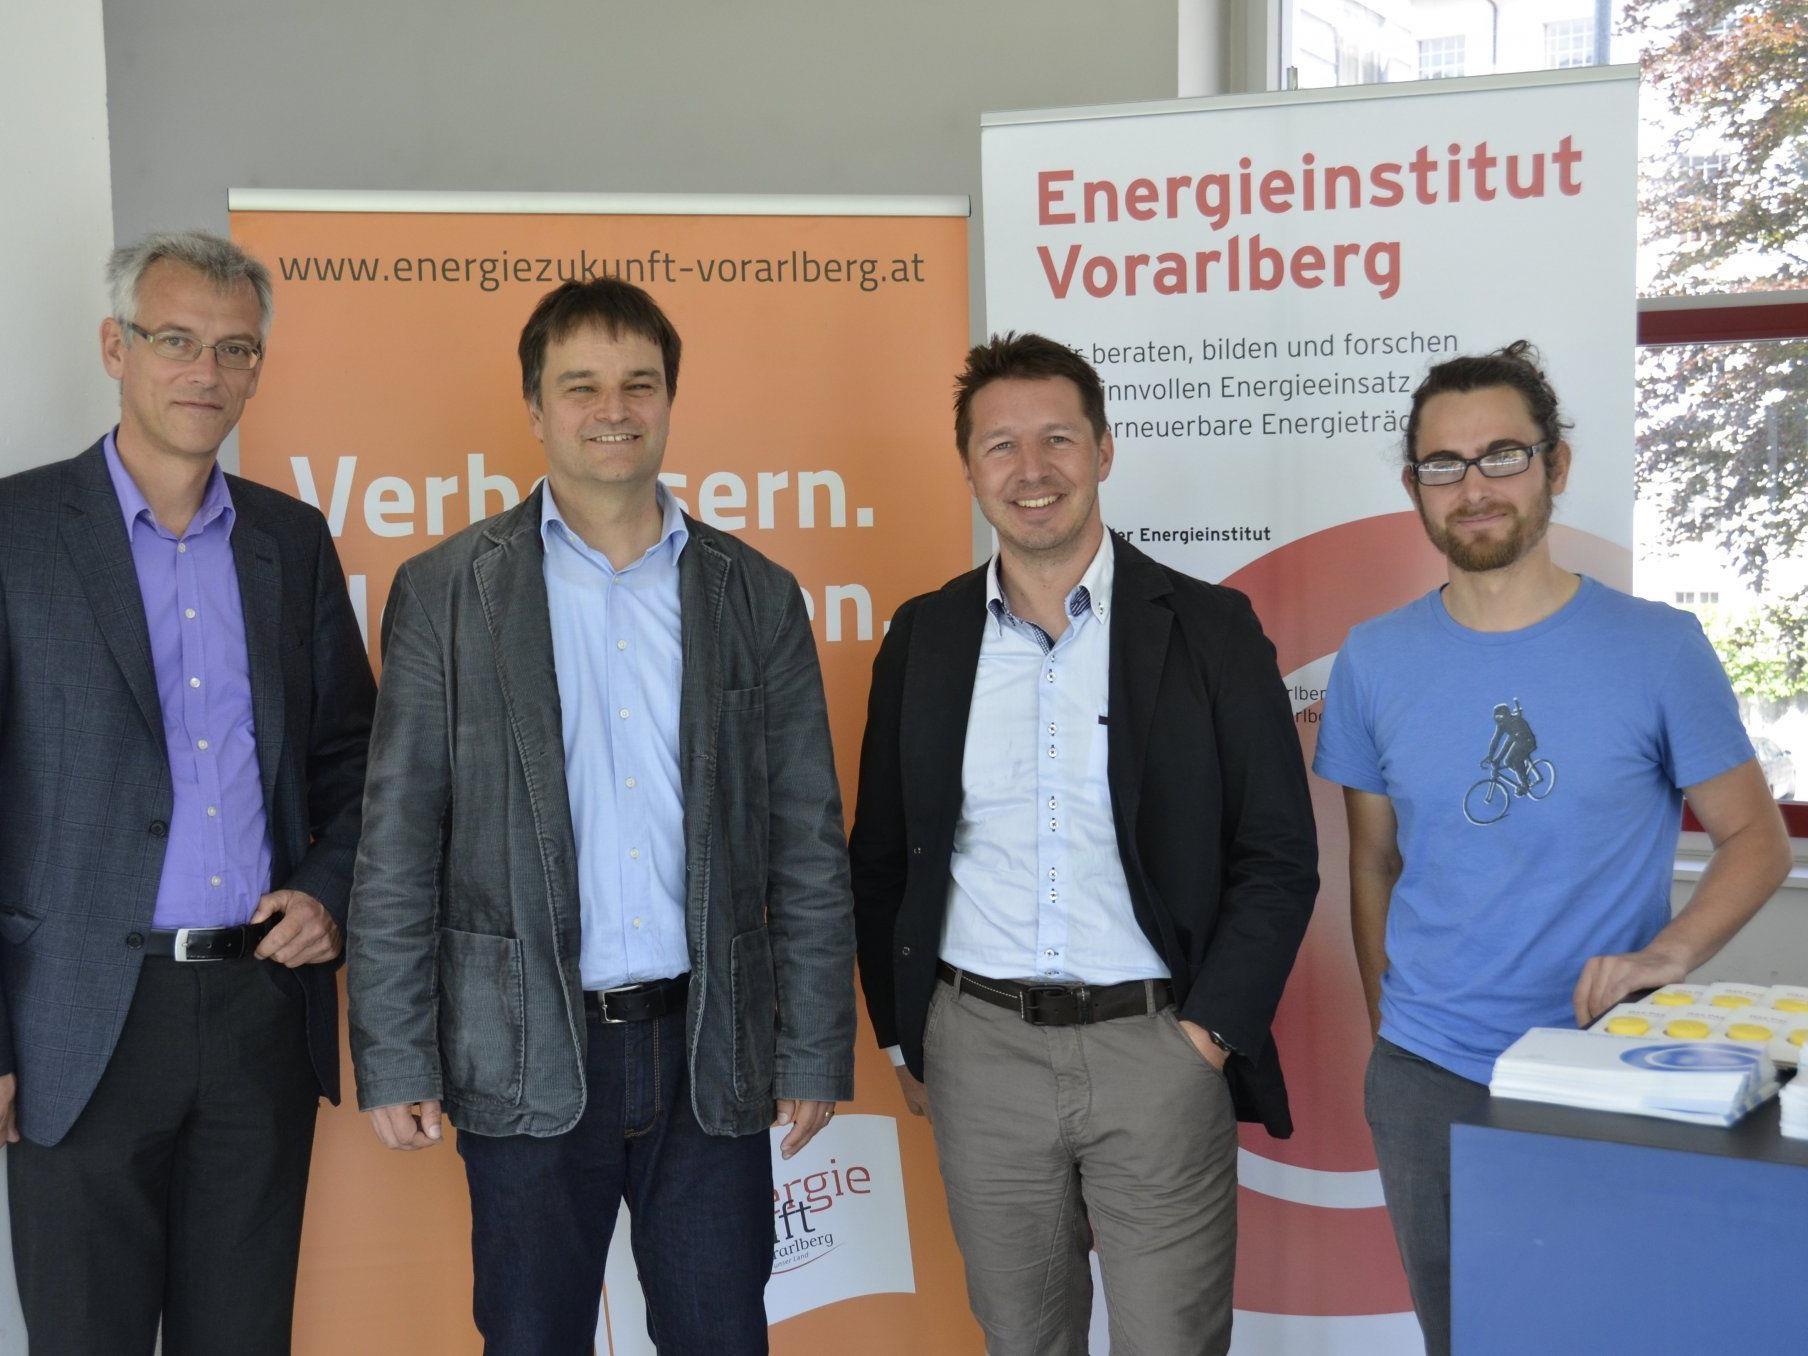 Josef Burtscher/Geschäftsführer des Energieinstitut Vorarlberg, Martin Ploss/Energieinstitut Vorarlberg, Elmar Draxl/Neue Heimat Tirol, David Frick/TU Graz